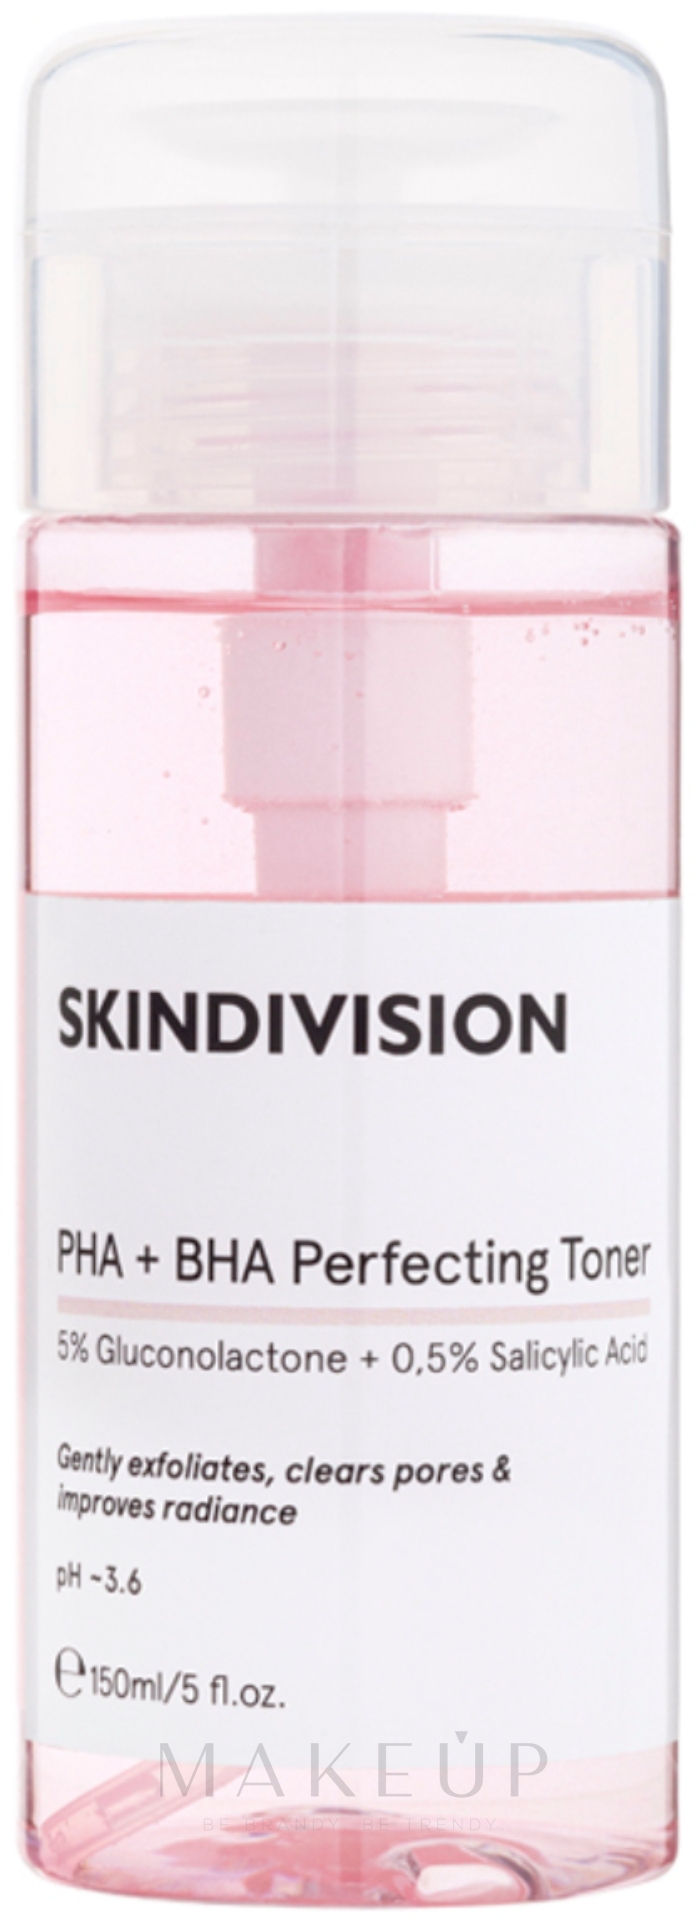 Exfolierendes und porenreinigendes Gesichtstonikum mit 5% Gluconolacton und 0,5% Salizylsäure für ebenmäßigen Teint - SkinDivision PHA + BHA Perfecting Toner — Bild 150 ml